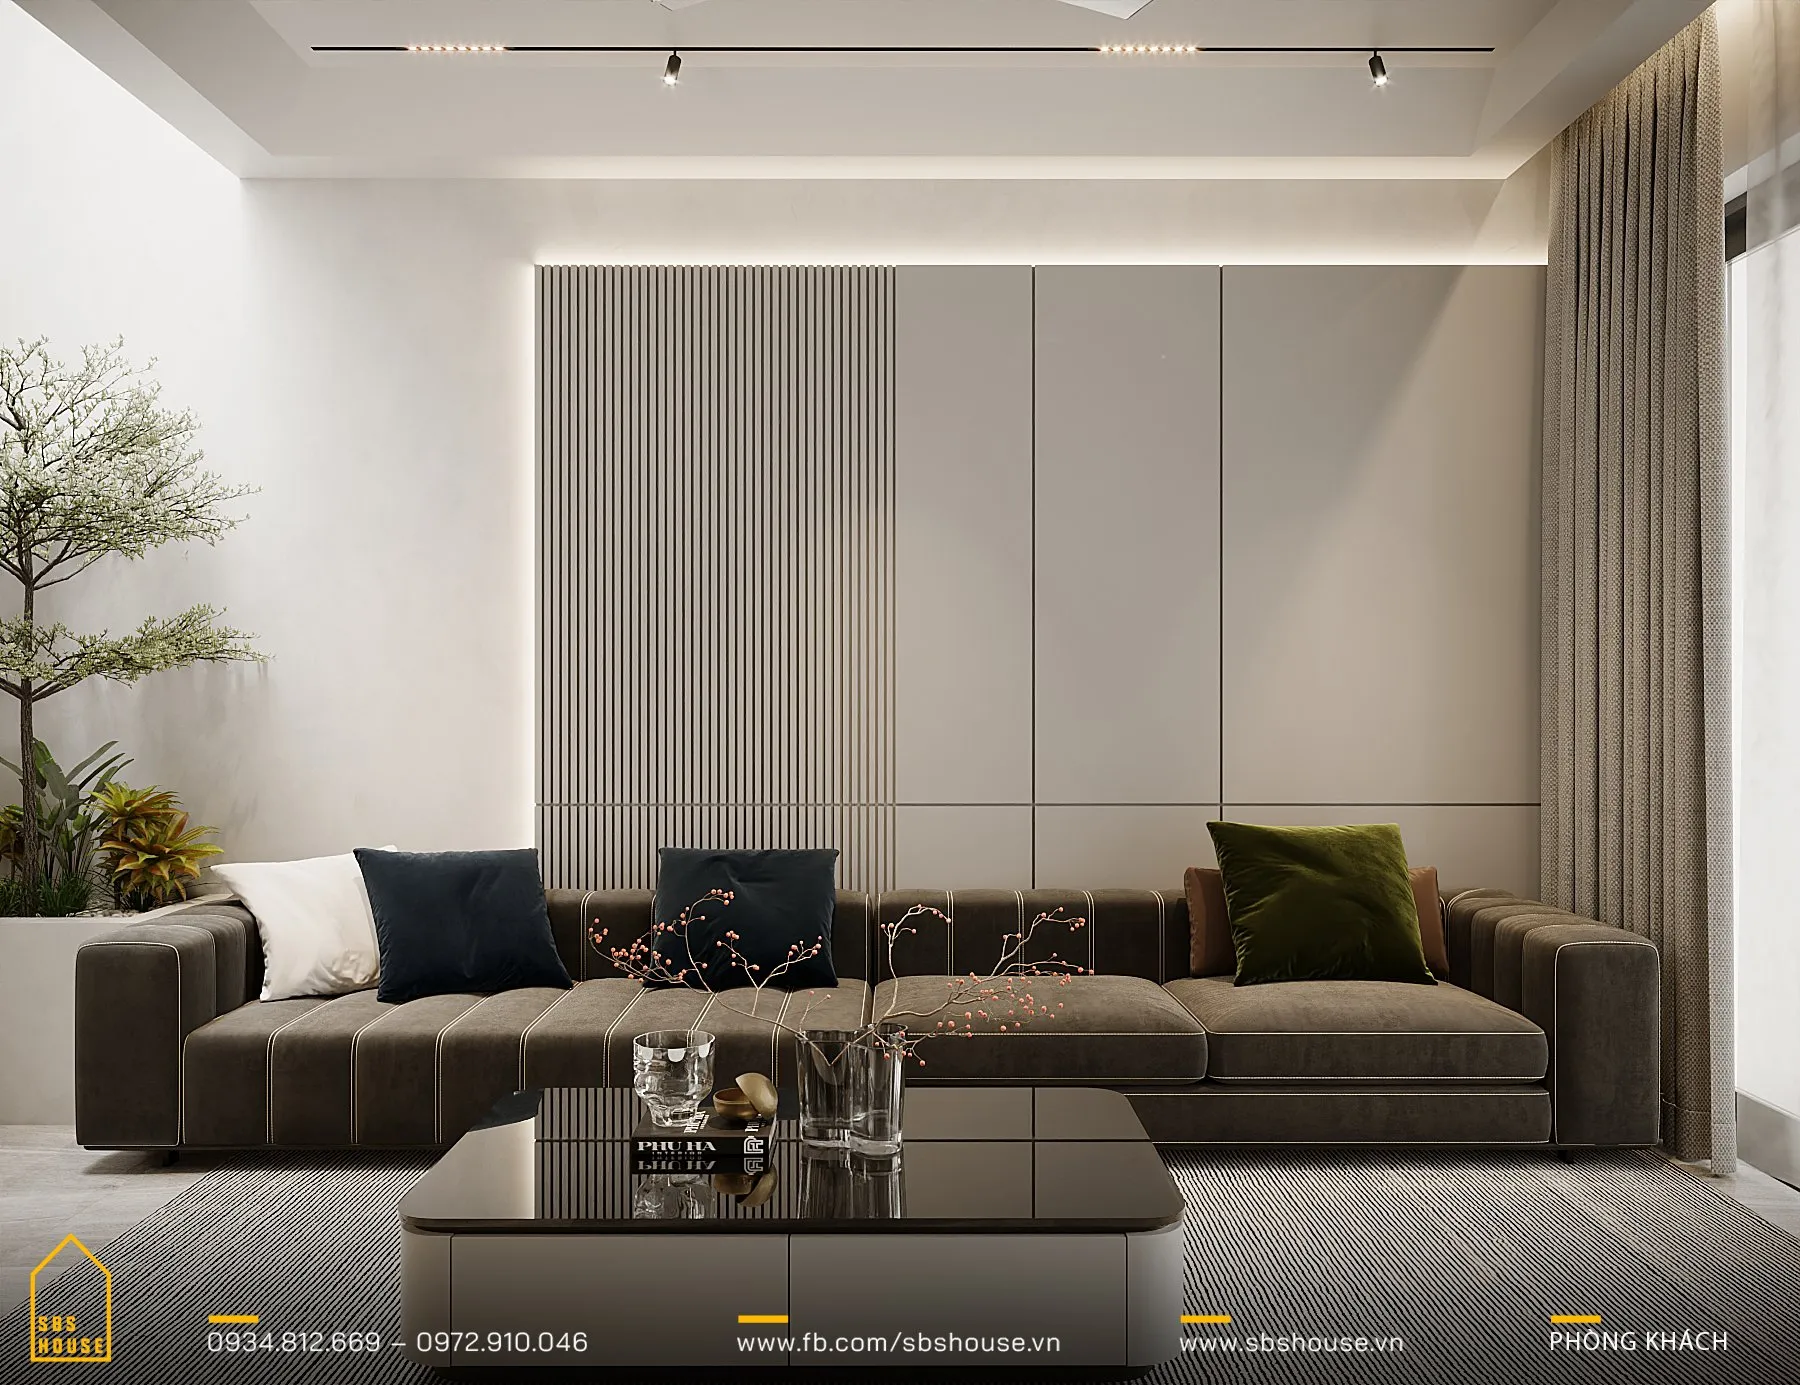 Bộ sofa dài màu nâu xám không chỉ êm ái mà còn phản ánh phong cách sống đương đại. 